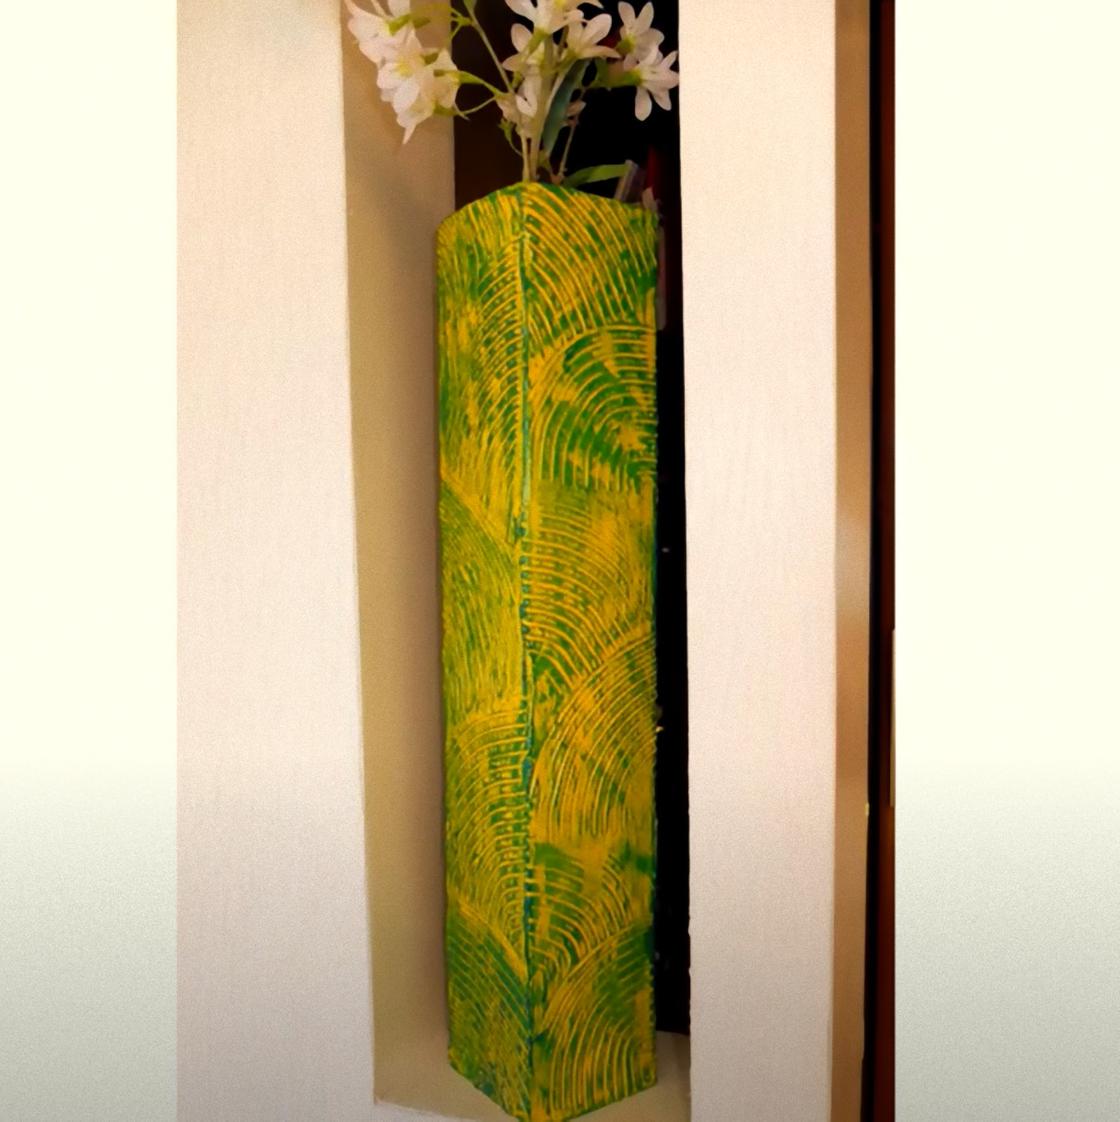 В нише стоит высокая четырехгранная напольная ваза с цветами. Поверхность вазы рельефная и окрашена в желто-зеленый цвет